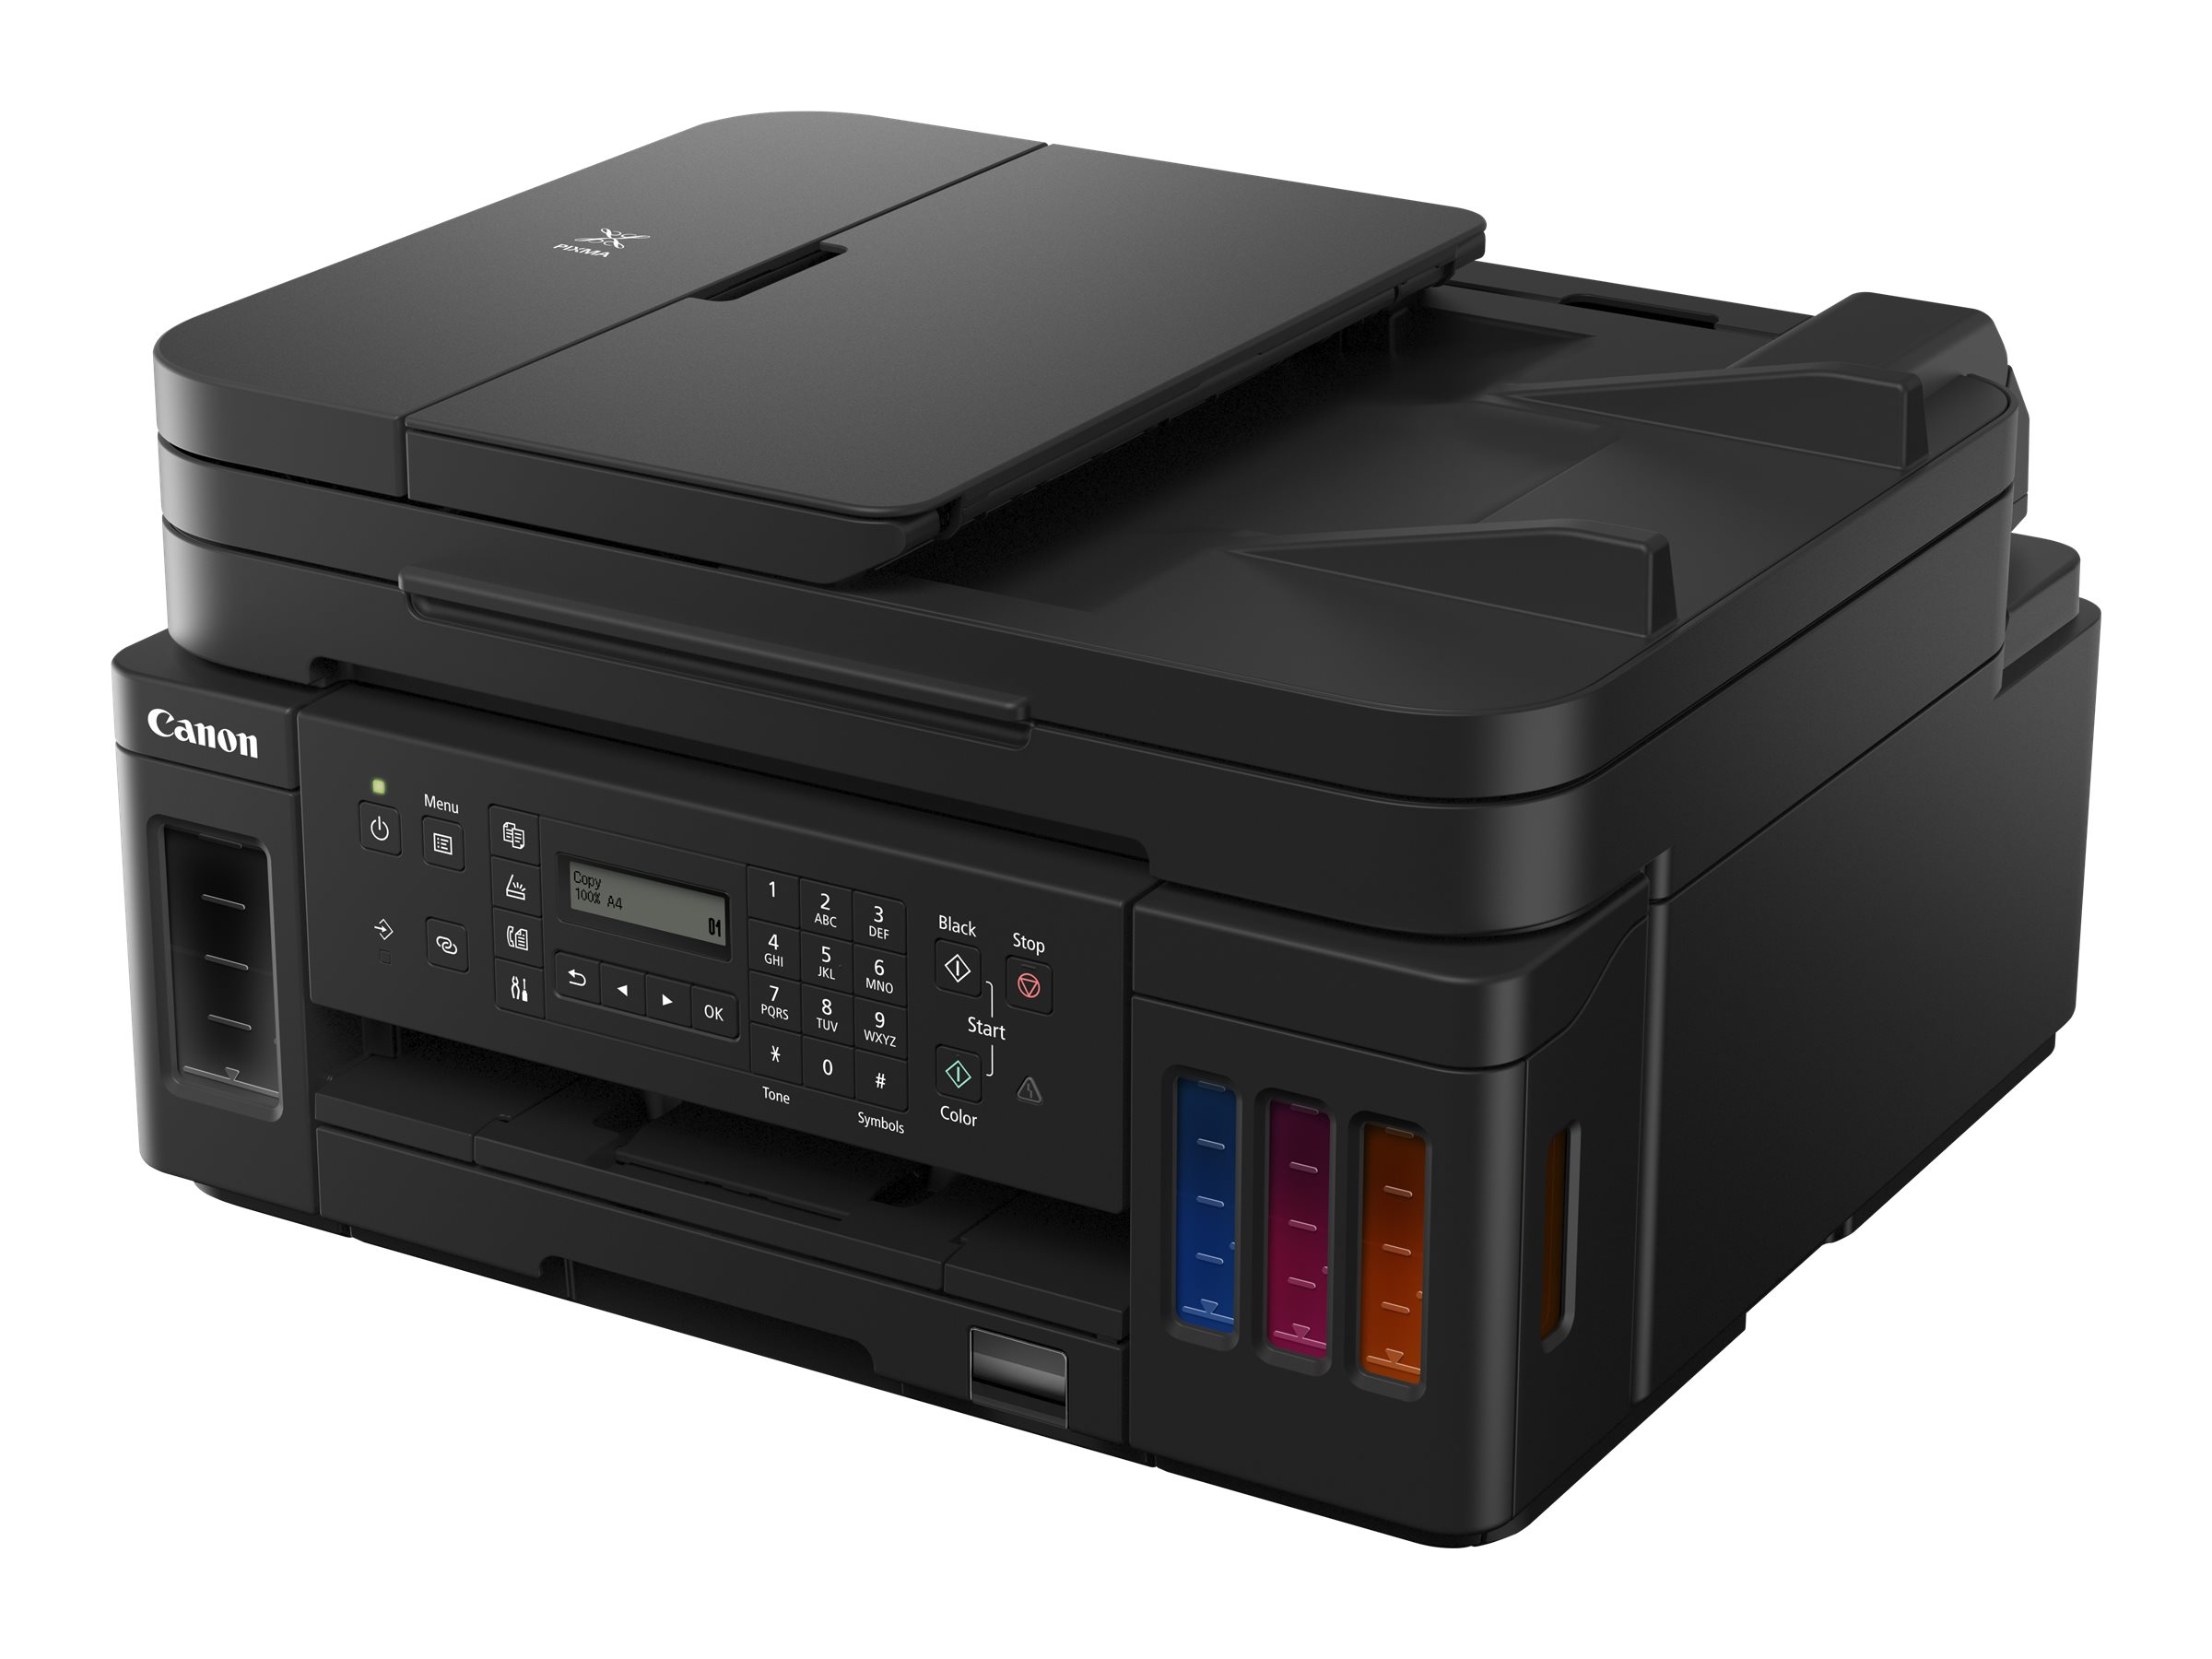 HP Color LaserJet Pro MFP M479fdn imprimante laser multifonction A4 couleur  (4 en 1)